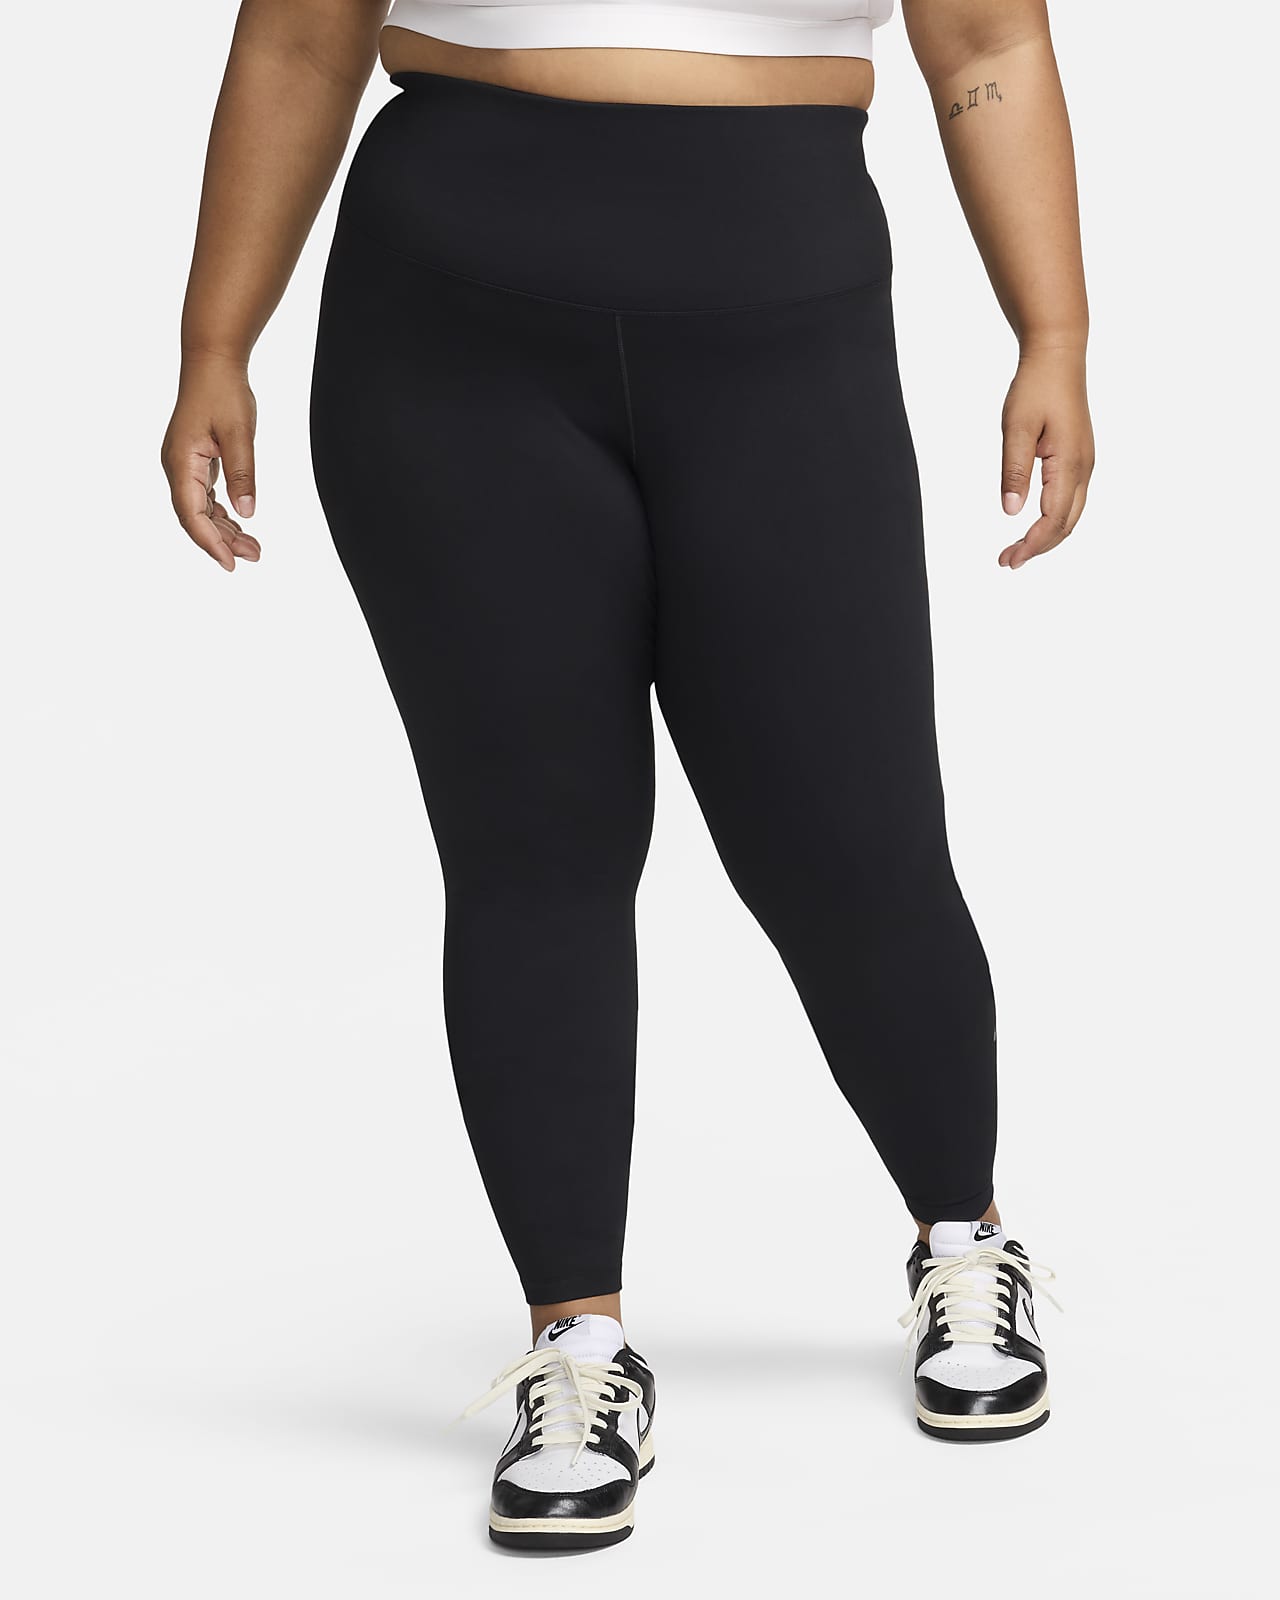 Nike One Women's High-Waisted Full-Length Leggings (Plus Size)